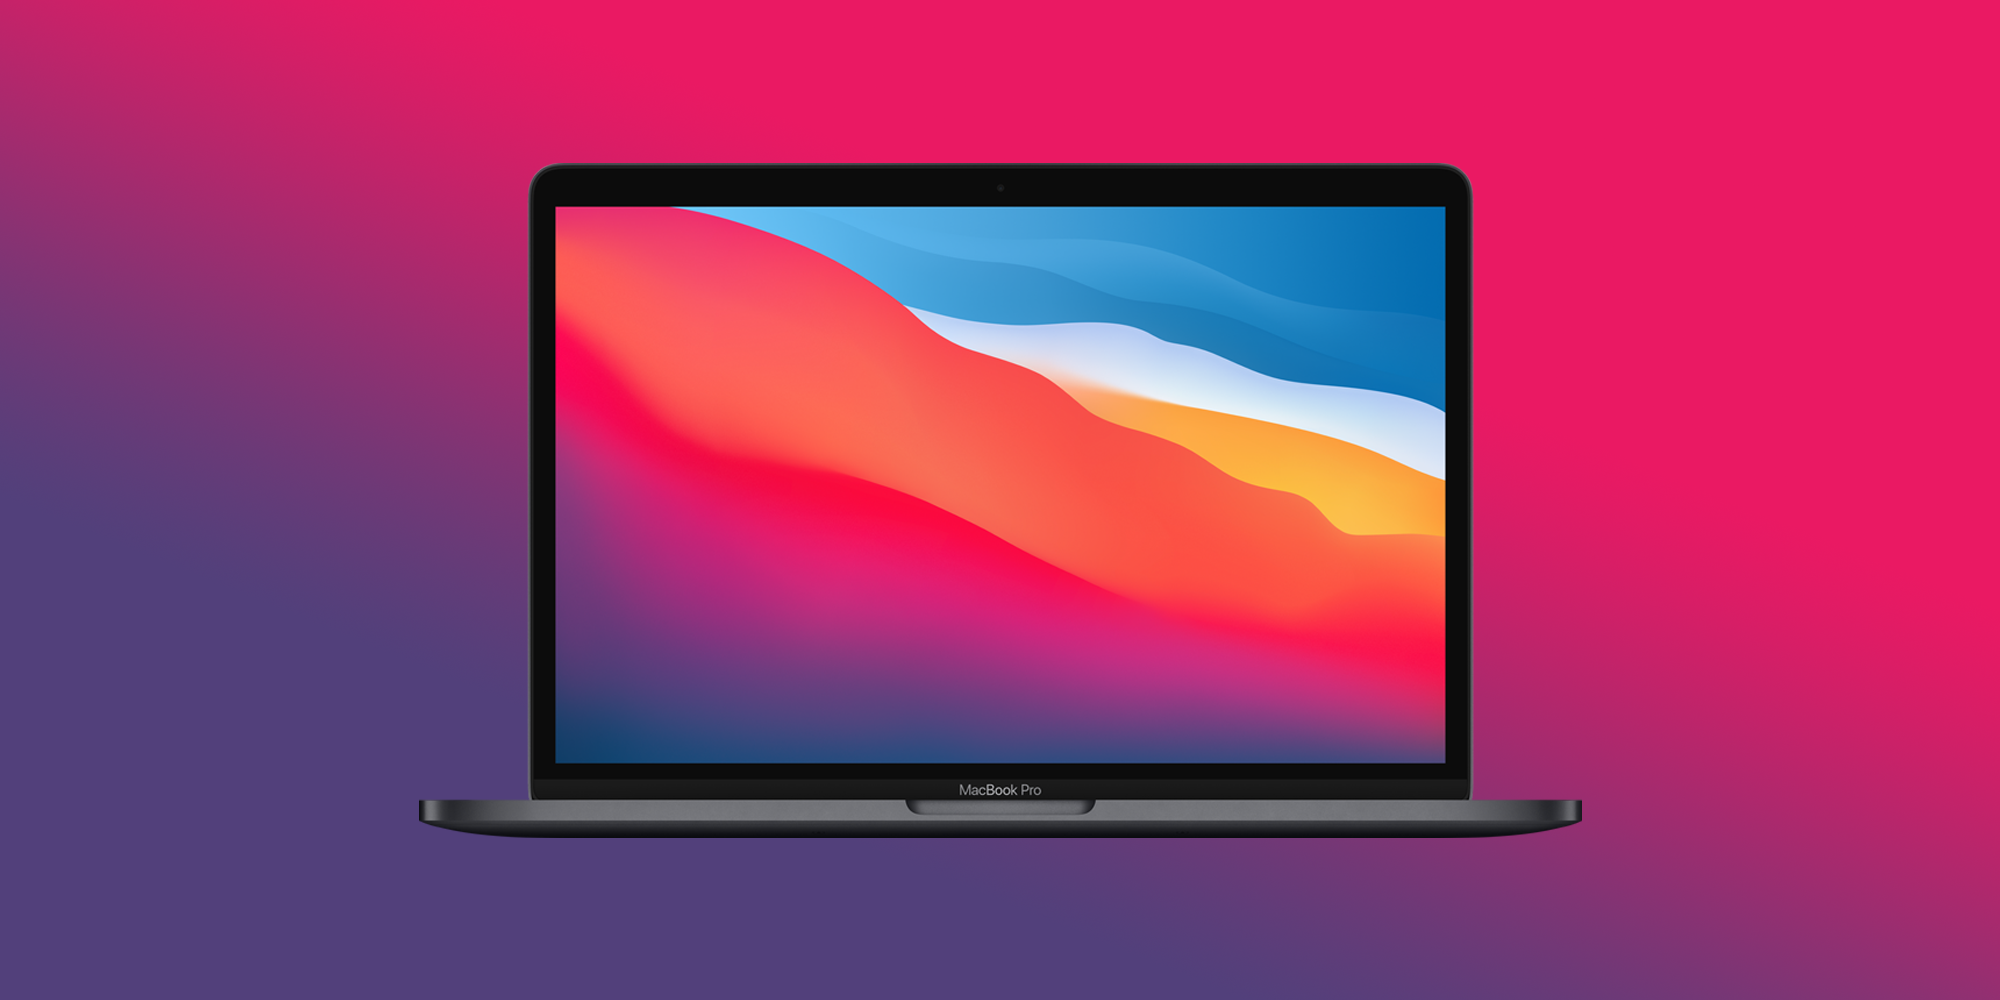 2021 MacBook Pro To Get Huge Display Upgrade With 120Hz Refresh Rate